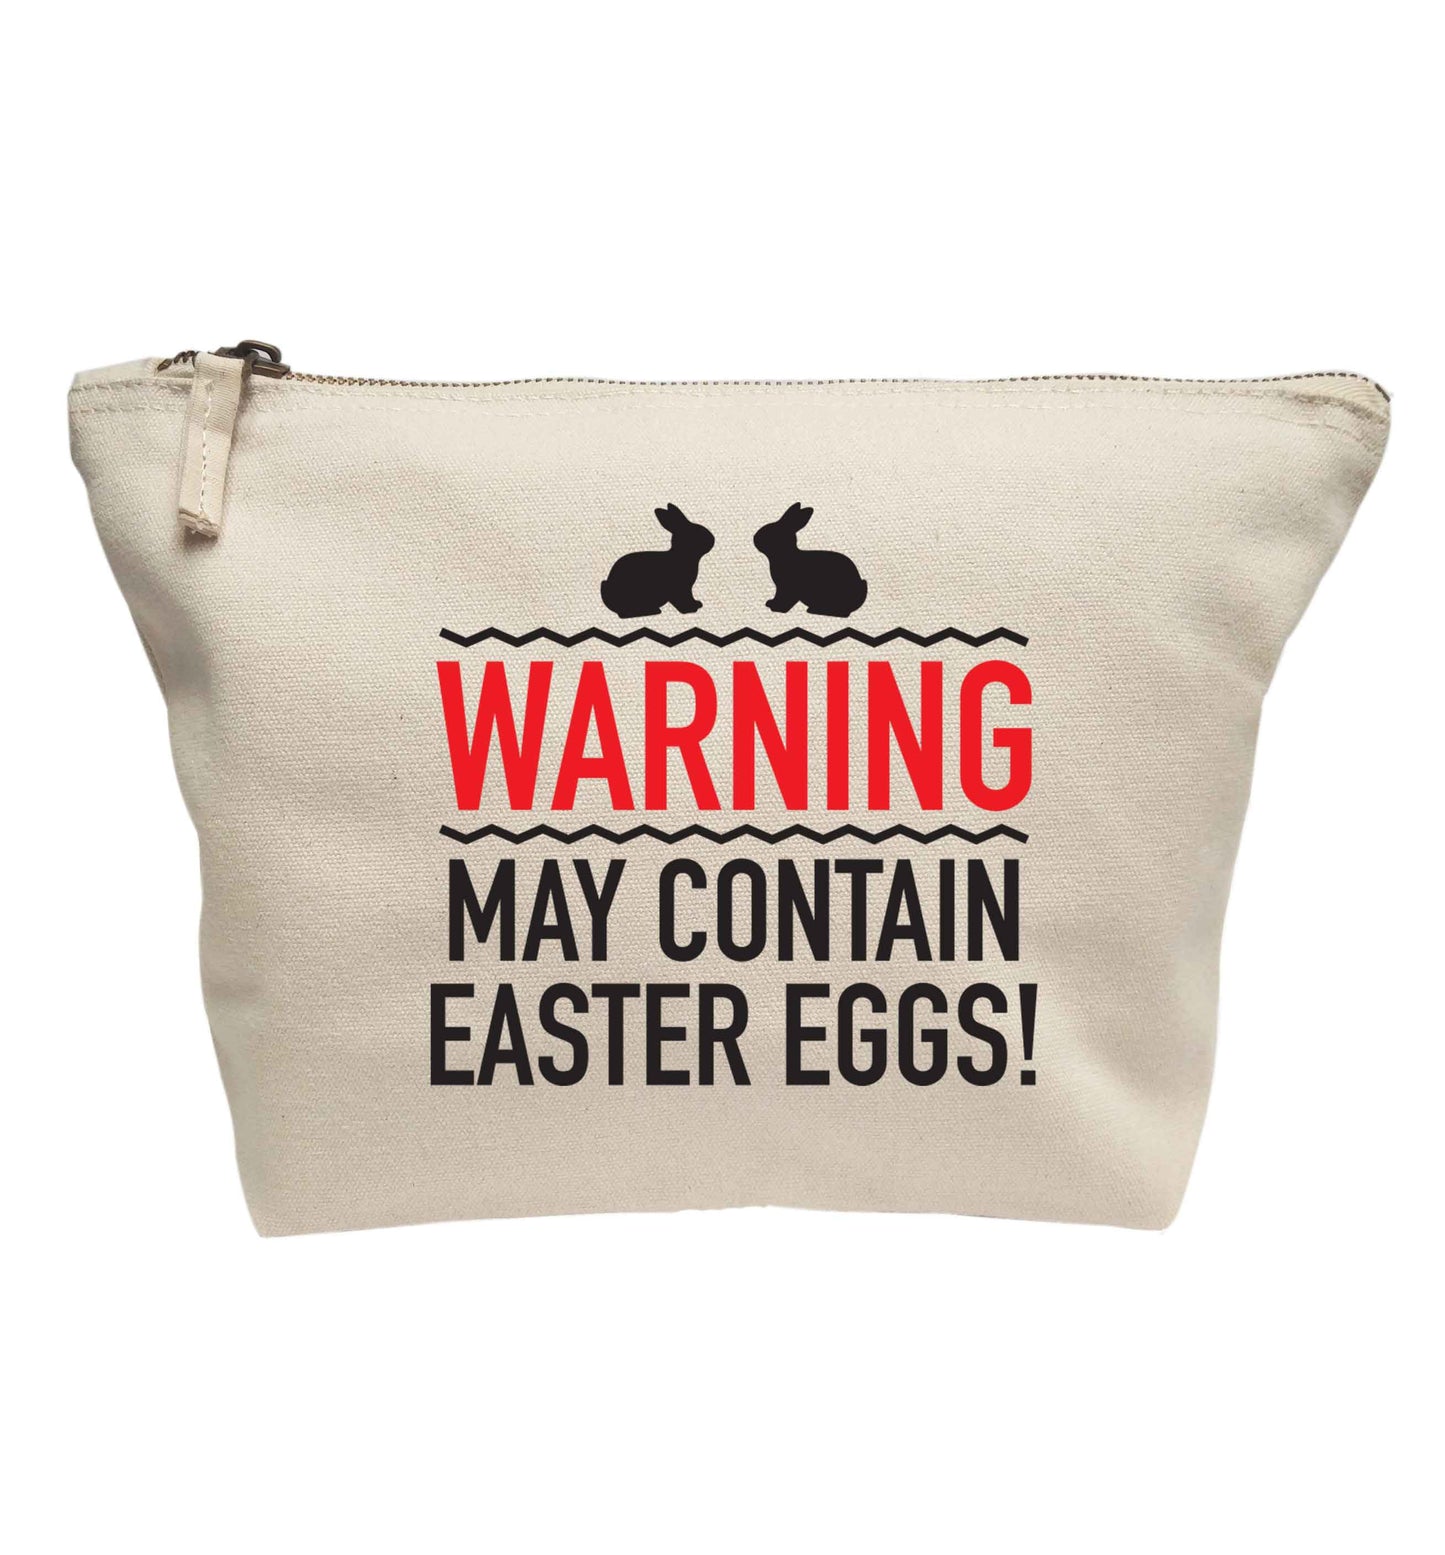 Warning may contain Easter eggs | Makeup / wash bag